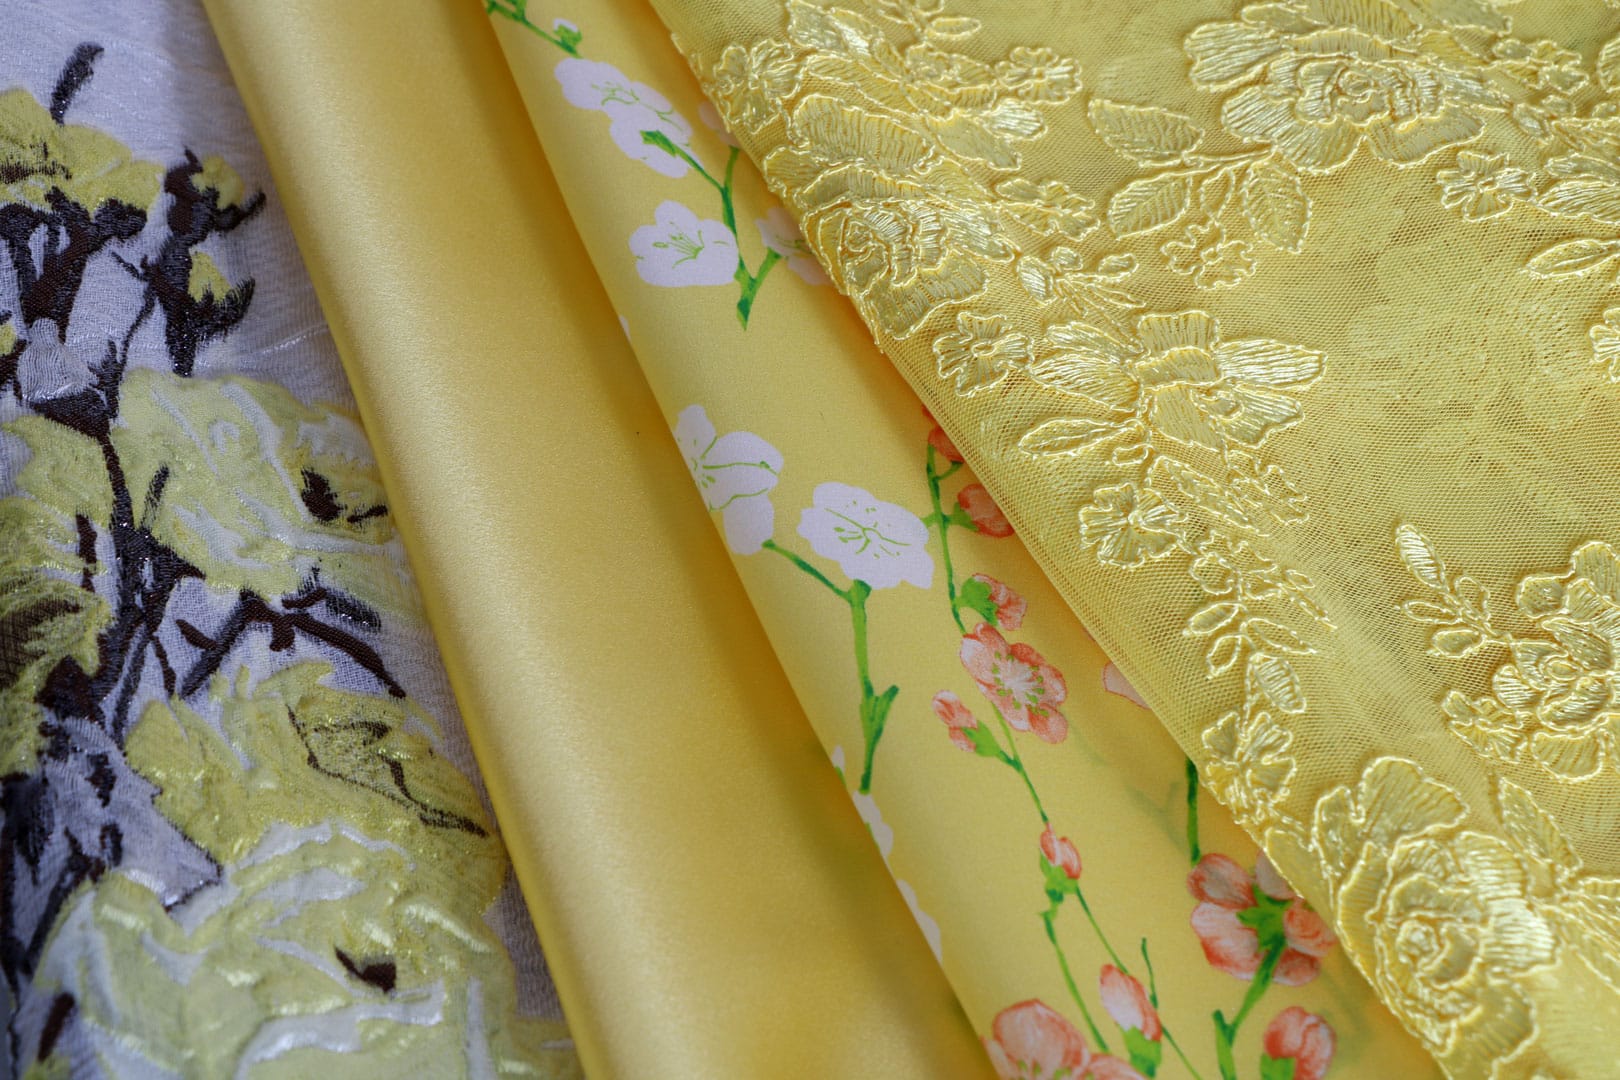 Tessuti giallo illuminatingper abbigliamento e moda | new tess